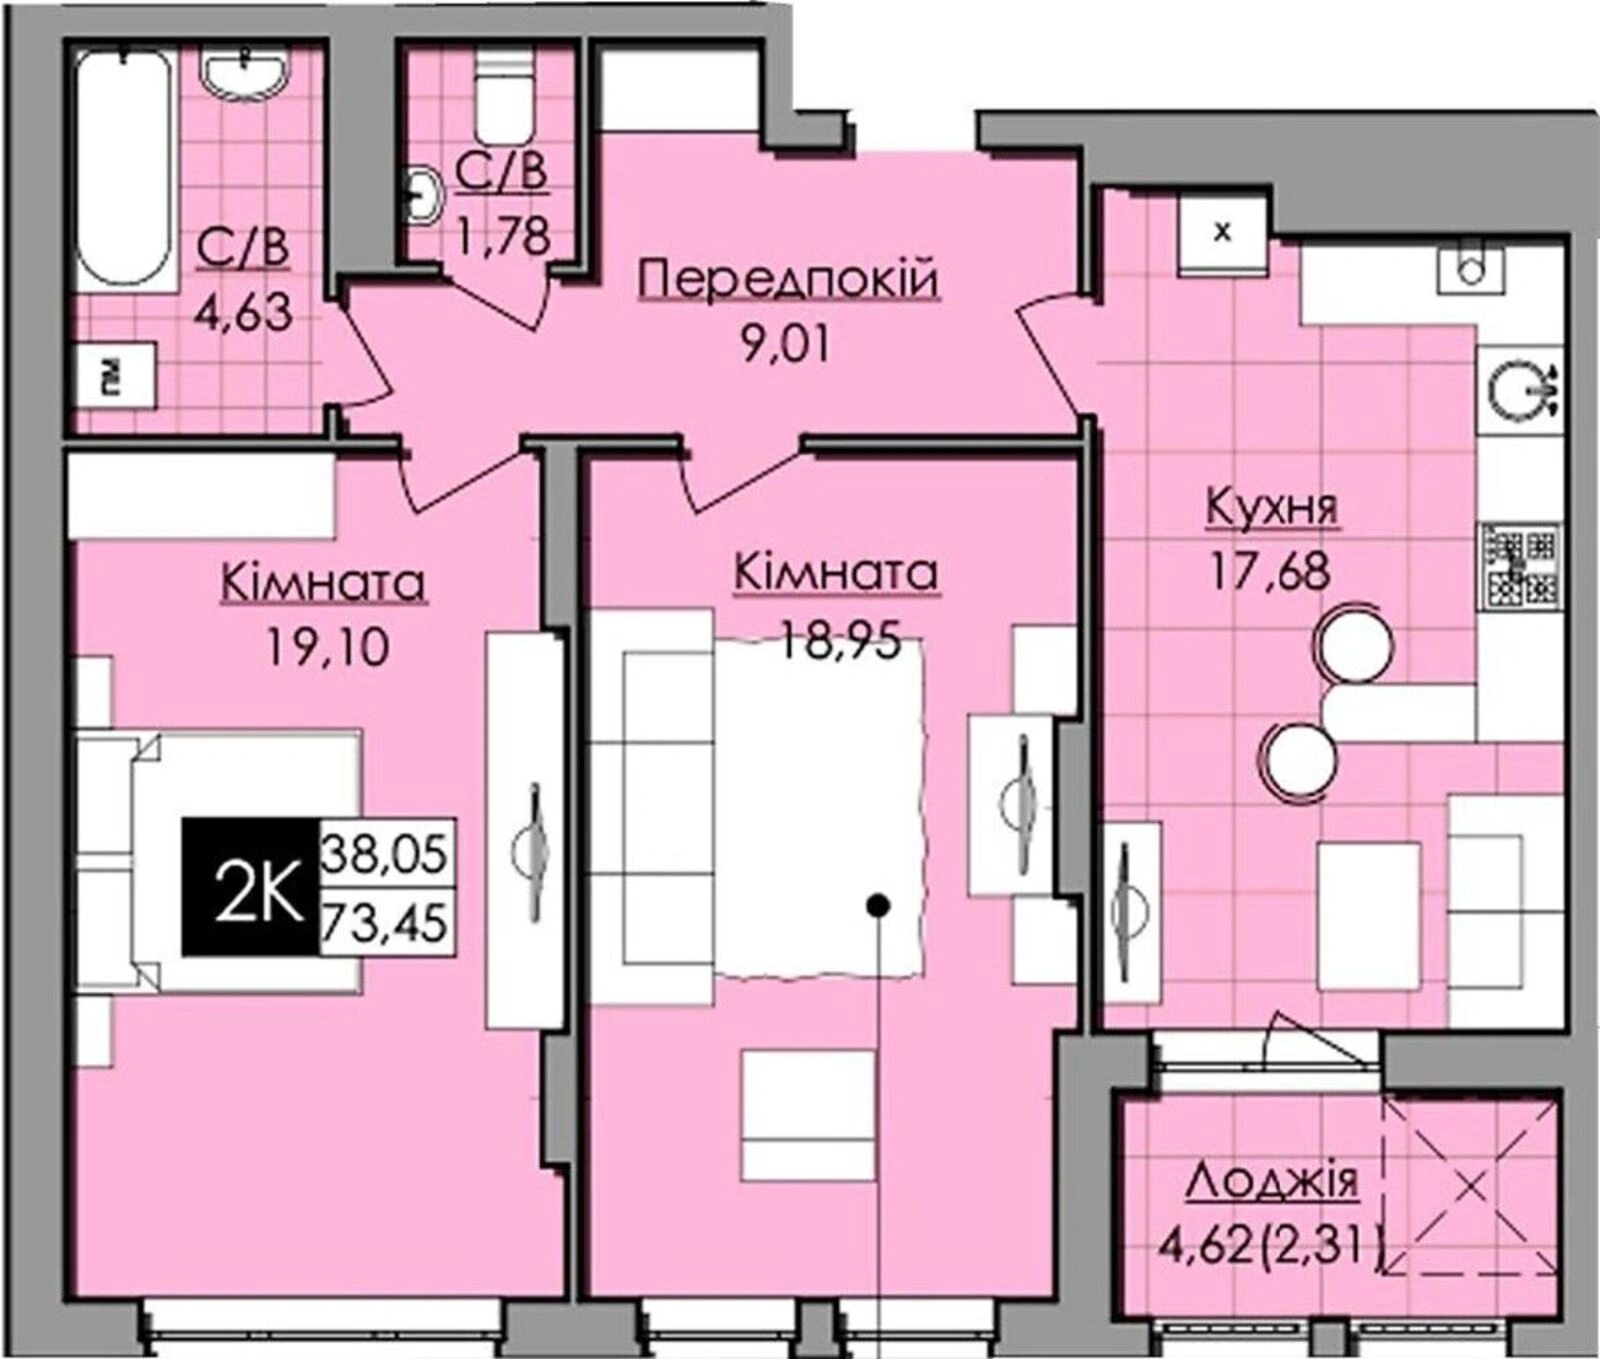 Продам 2-х кімнатну квартиру в новобудові біля парків Погулянка і Снопківський.